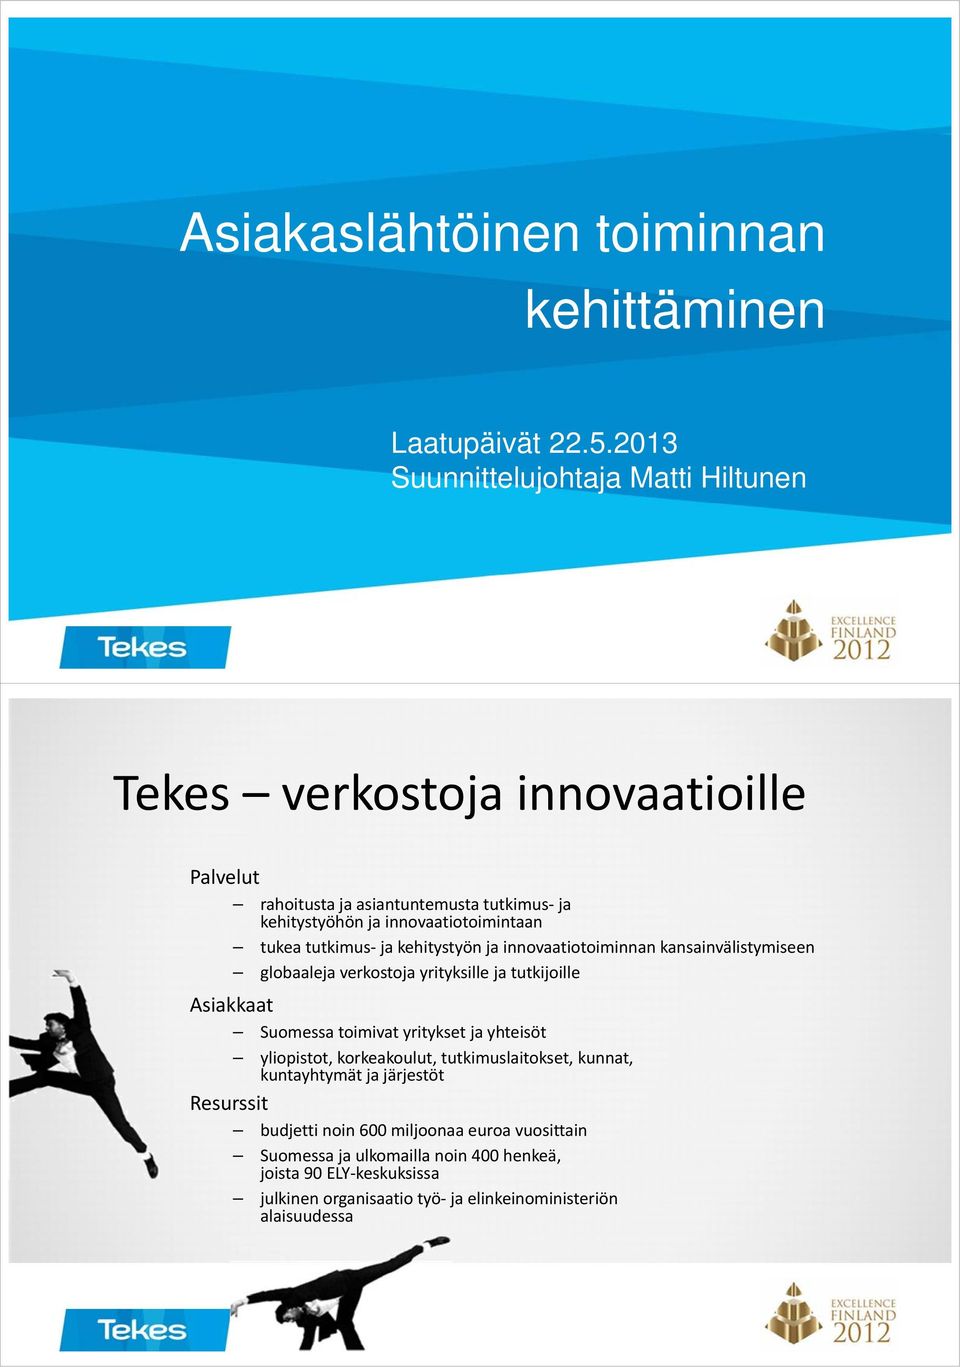 tukea tutkimus ja kehitystyön ja innovaatiotoiminnan kansainvälistymiseen globaaleja verkostoja yrityksille ja tutkijoille Asiakkaat Suomessa toimivat yritykset